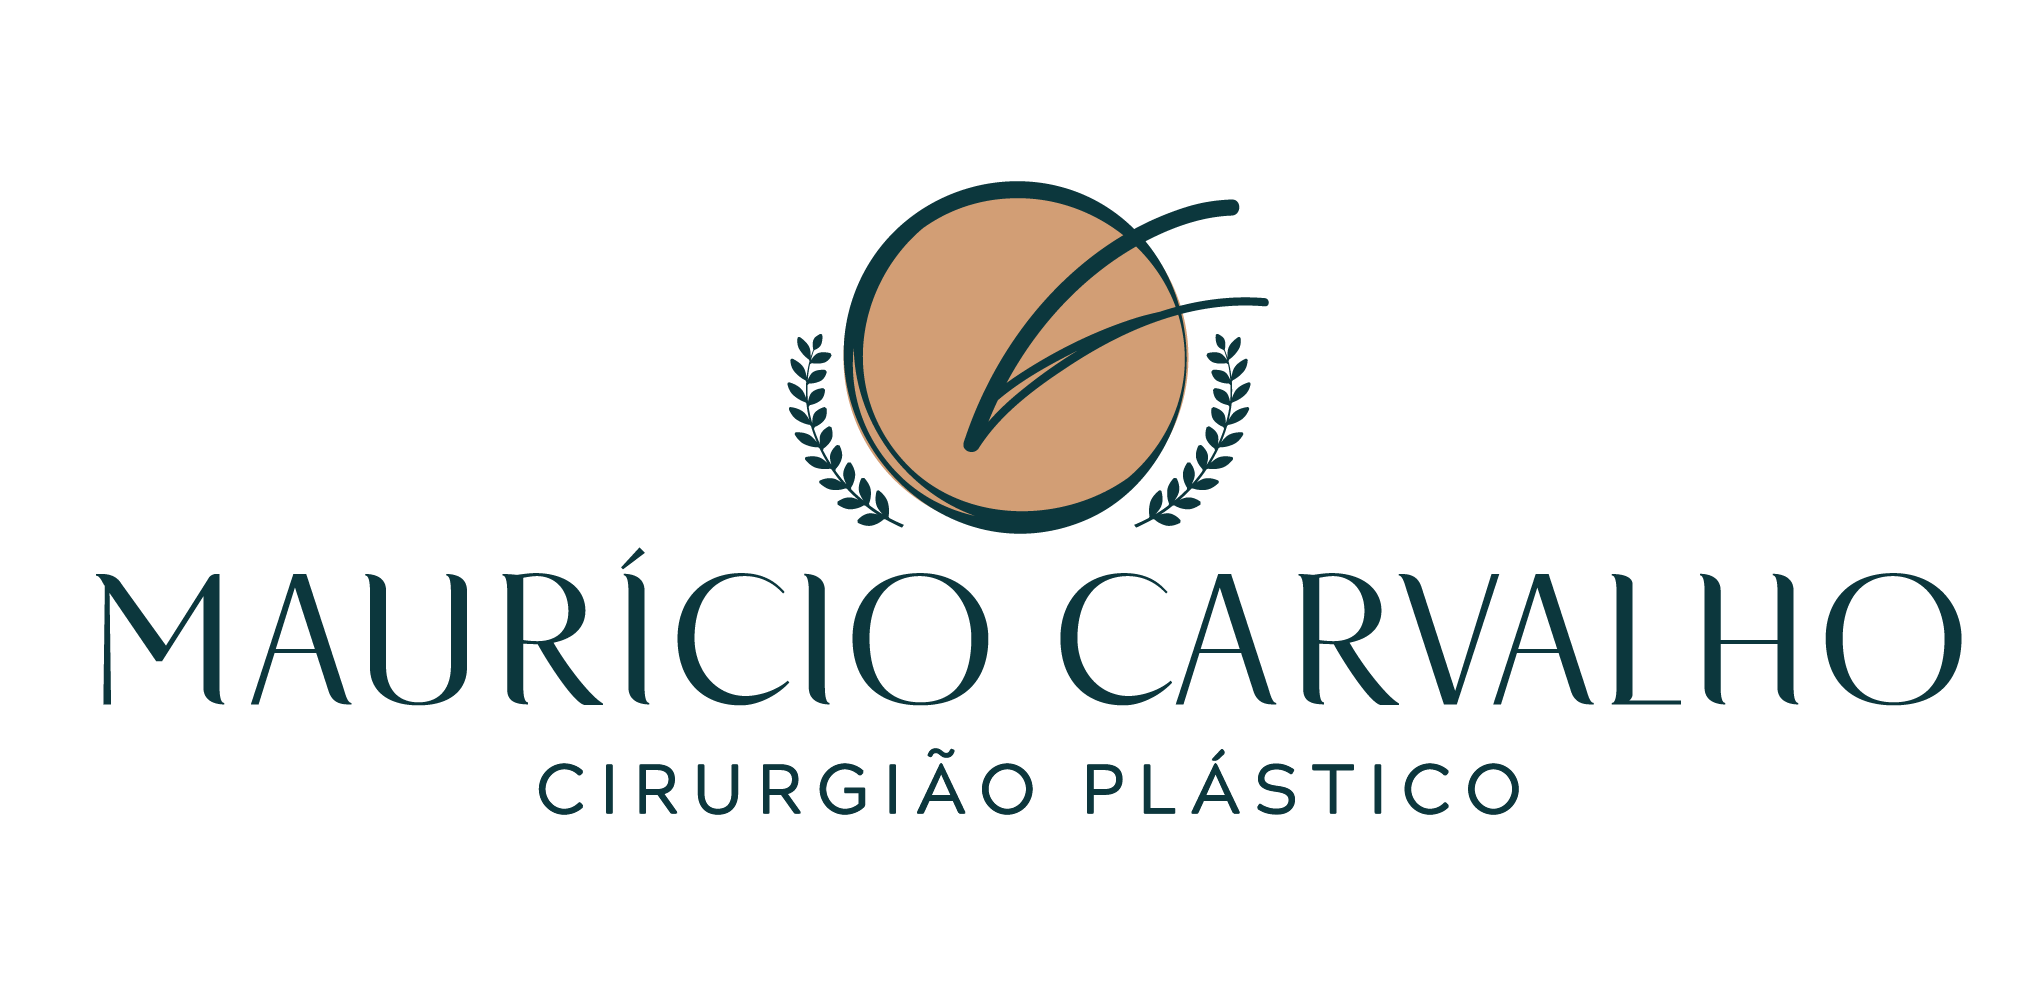 Maurício Carvalho - Cirurgião Plástico